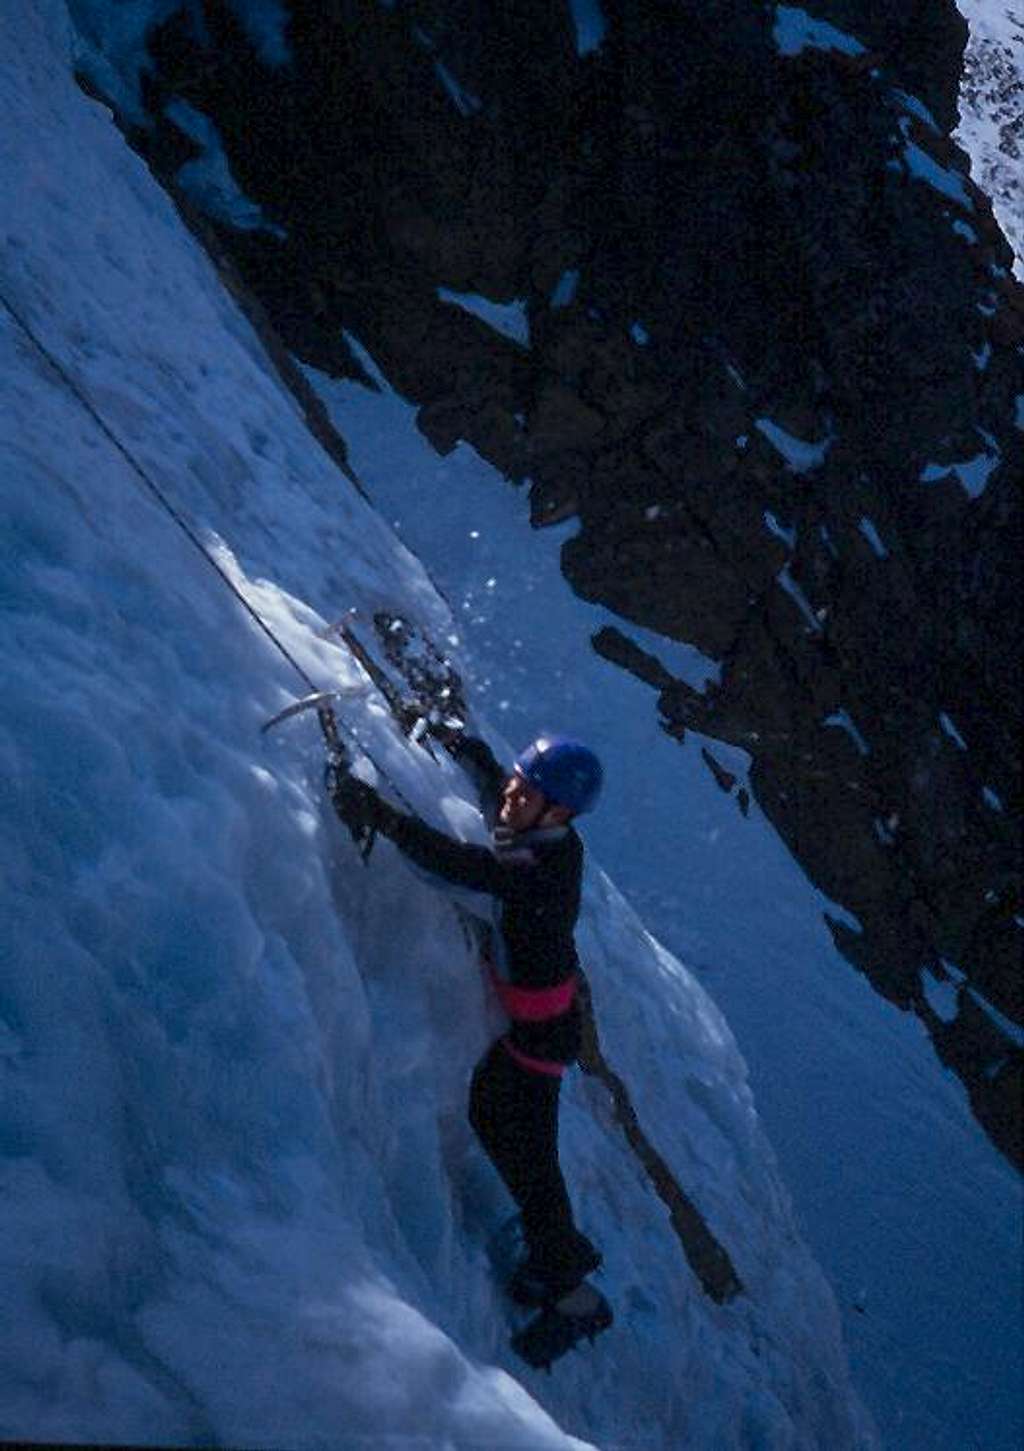 Climbing the ice cascade